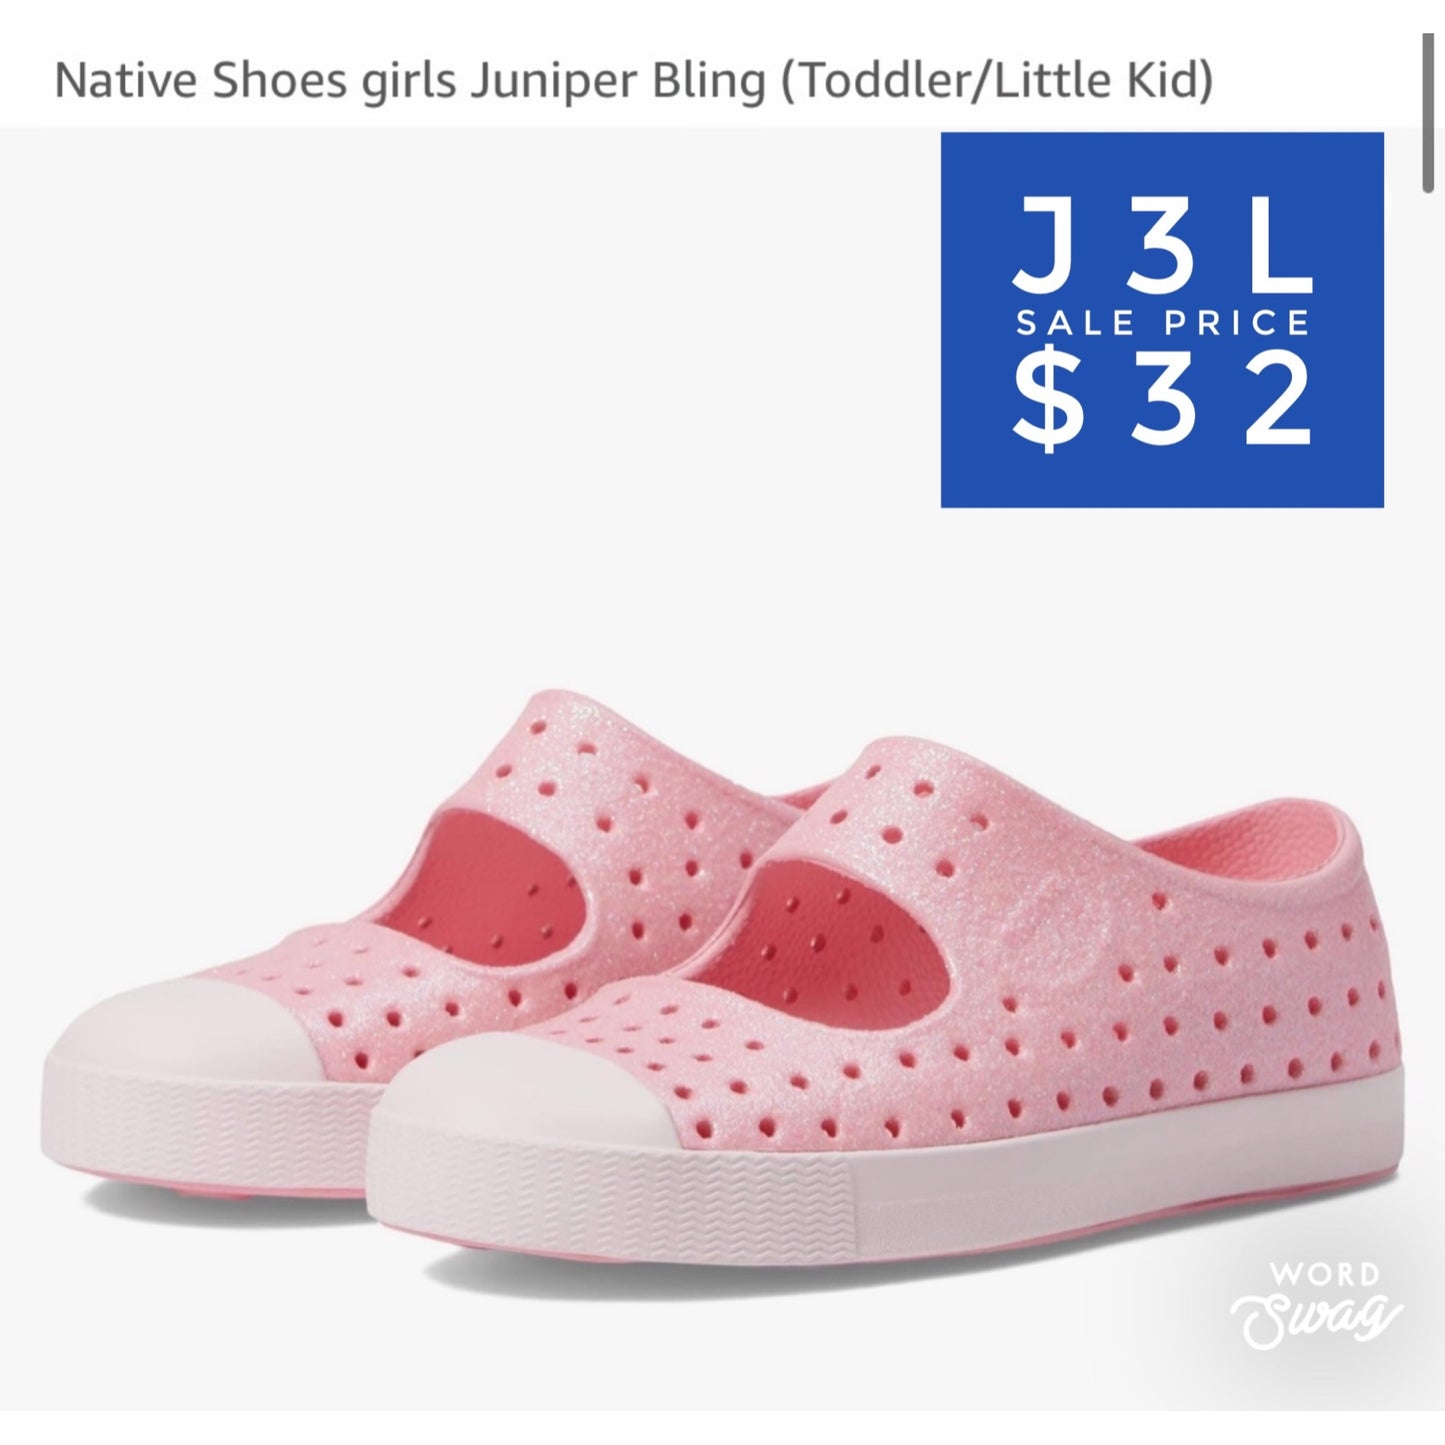 Native Shoes girls Juniper Bling (Toddler/Little Kid)